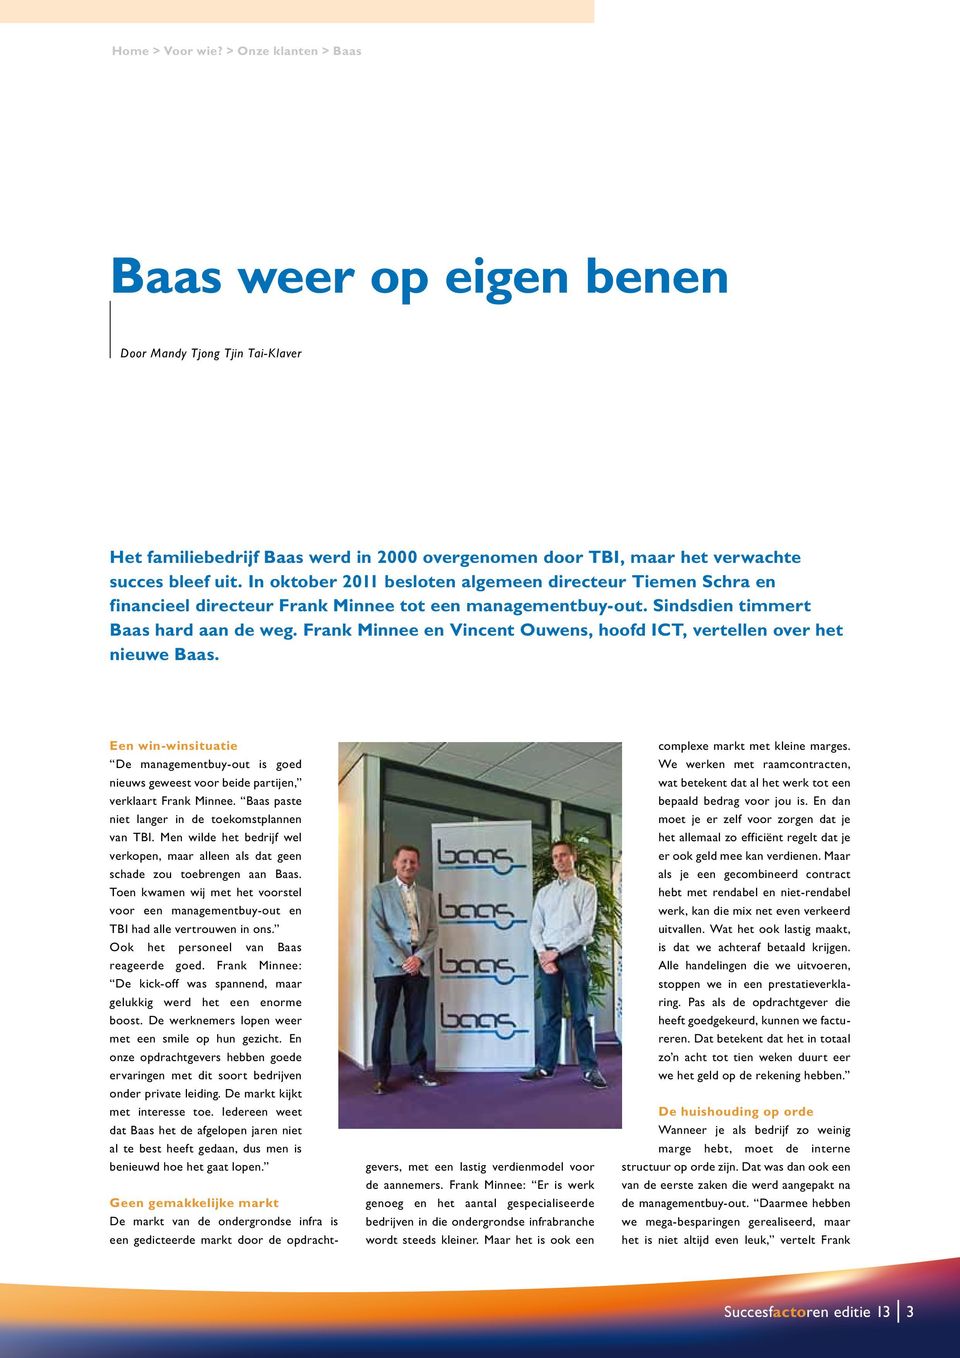 Frank Minnee en Vincent Ouwens, hoofd ICT, vertellen over het nieuwe Baas. Een win-winsituatie De managementbuy-out is goed nieuws geweest voor beide partijen, verklaart Frank Minnee.